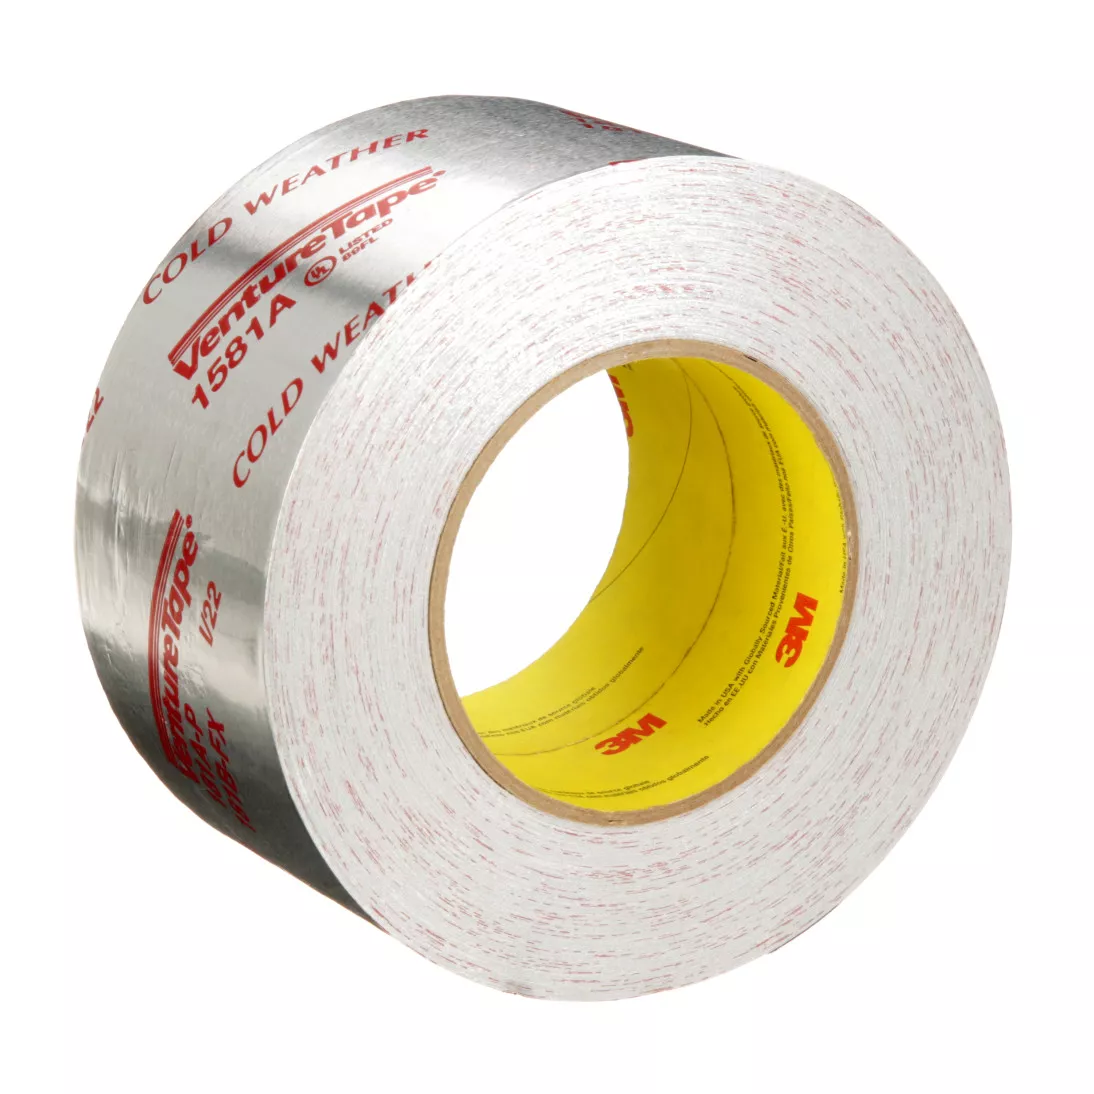 3M™ Venture Tape™ UL181A-P Aluminum Foil Tape 1581A, Silver, 99 mm x 55
m, 2 mil, 12 rolls per case